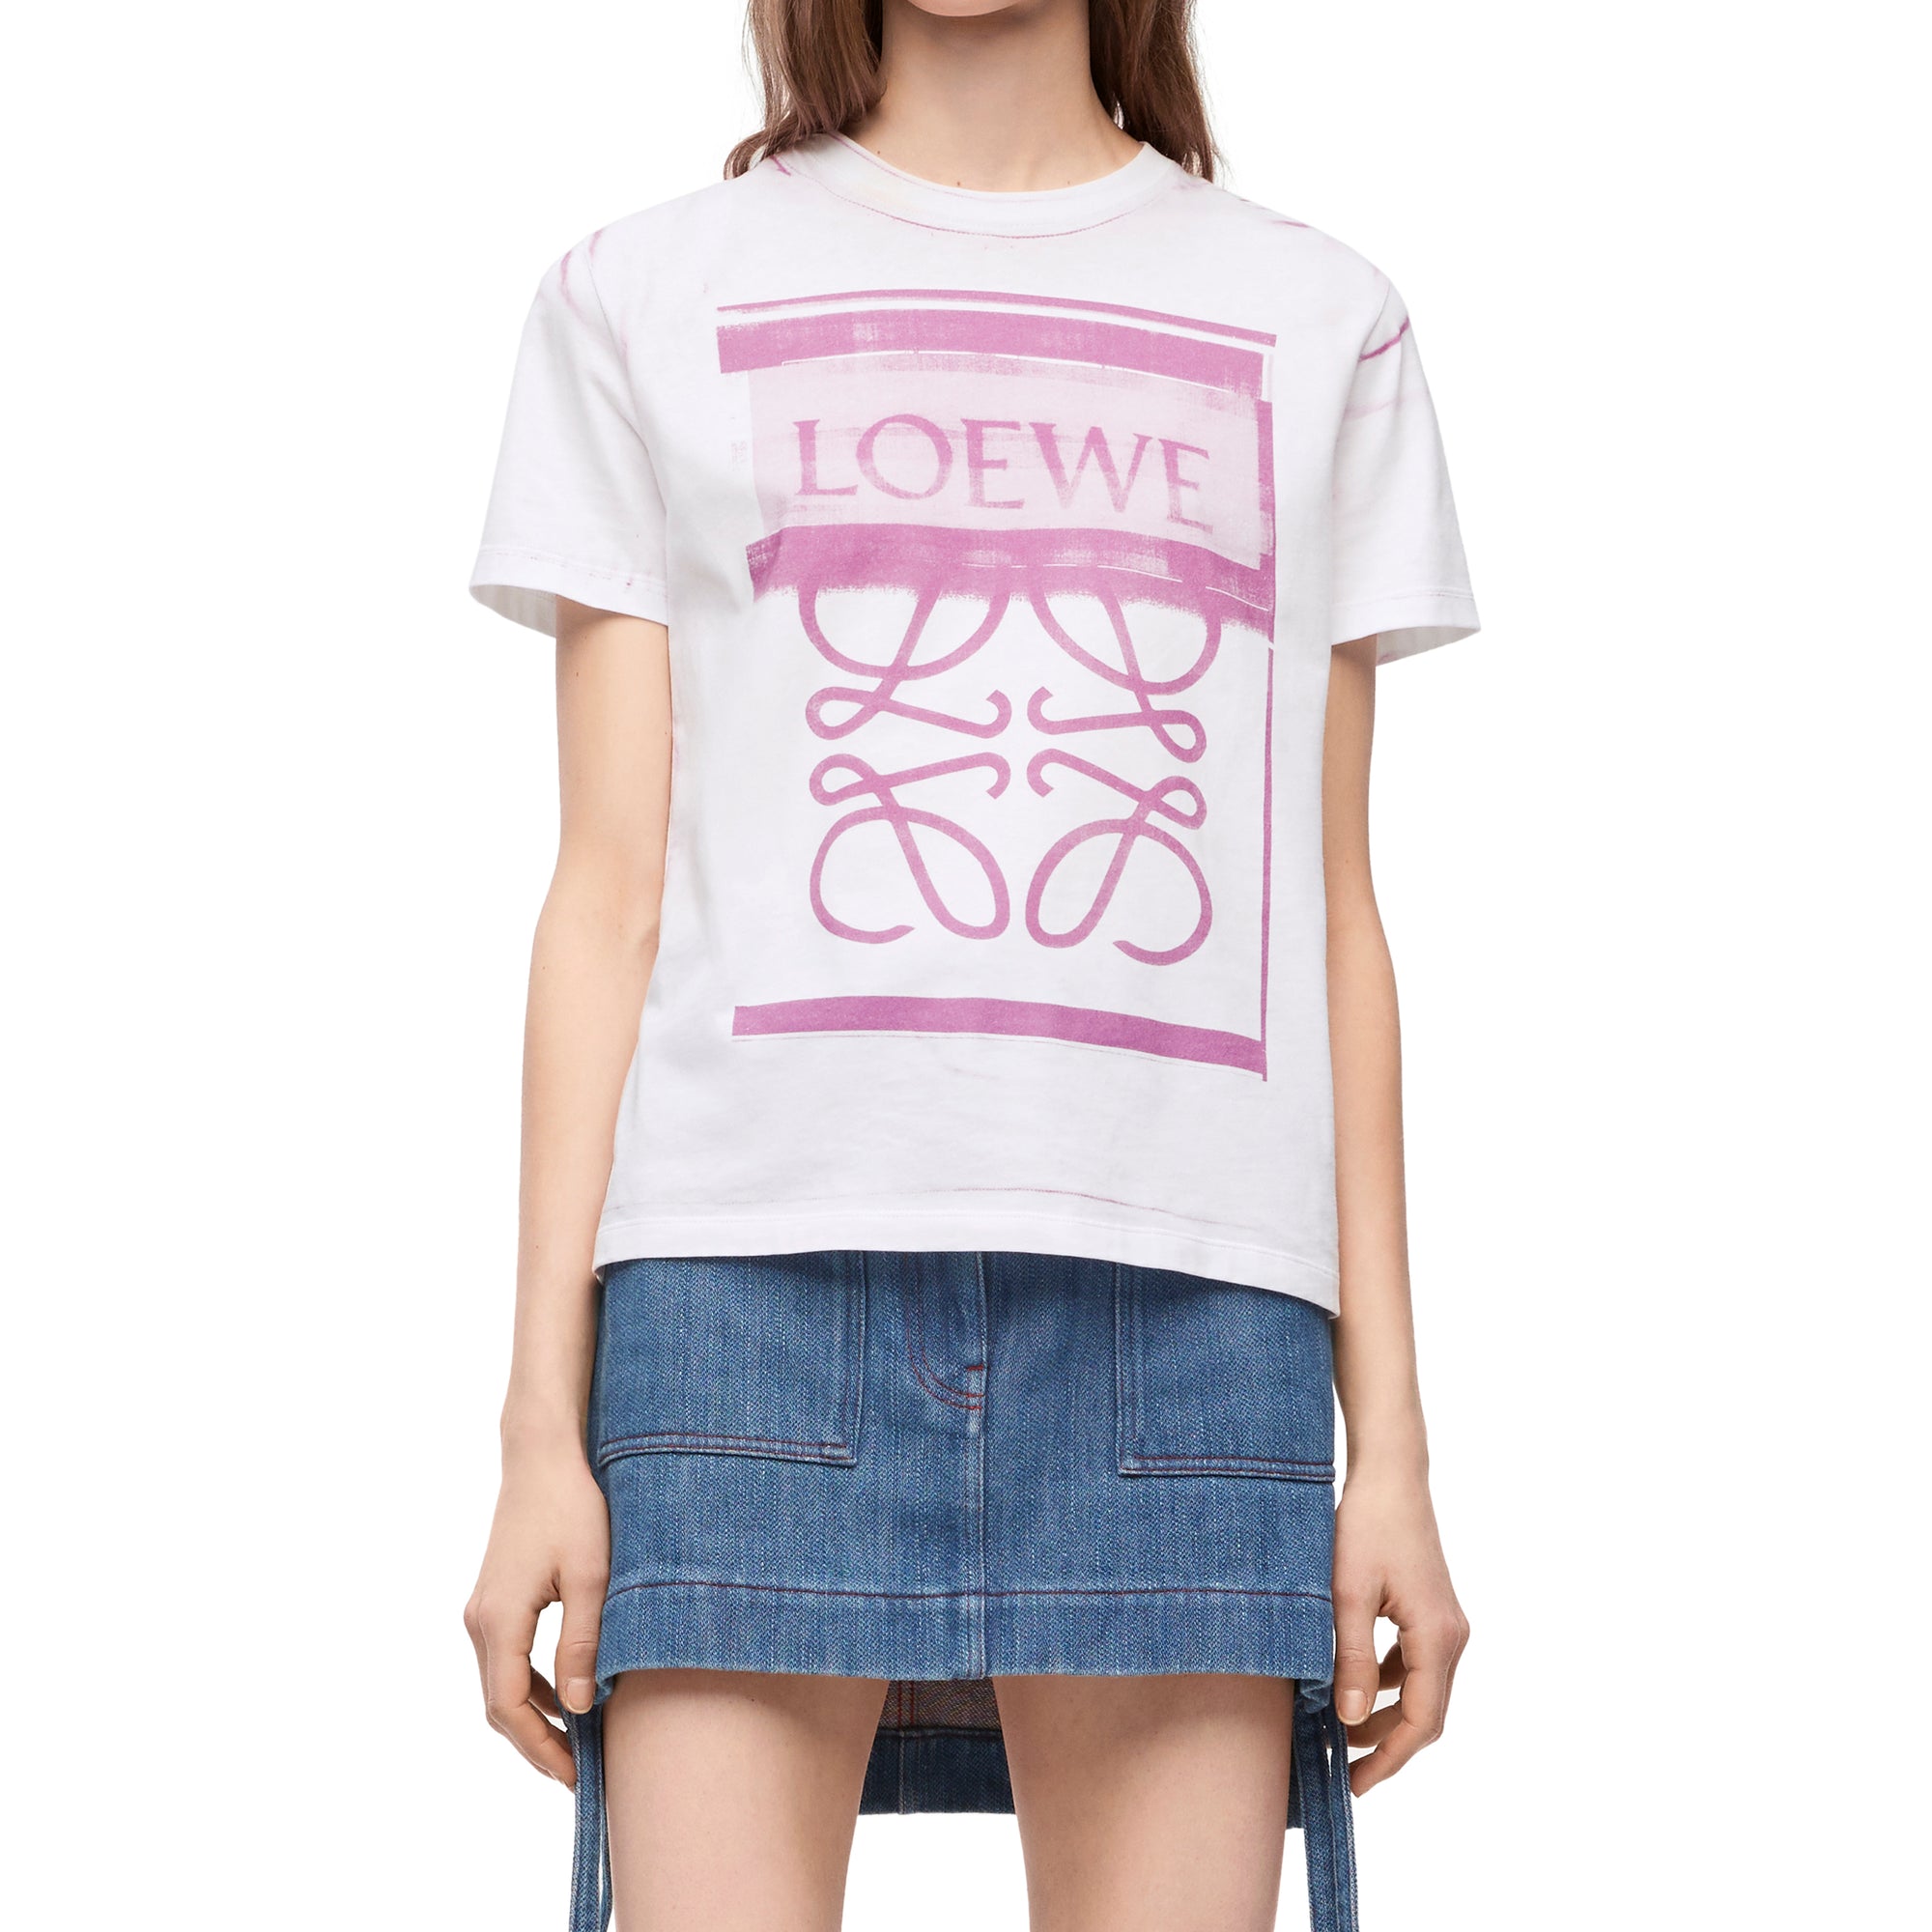 Loewe - Women’s Regular Fit T-Shirt - (White/Pink) view 3